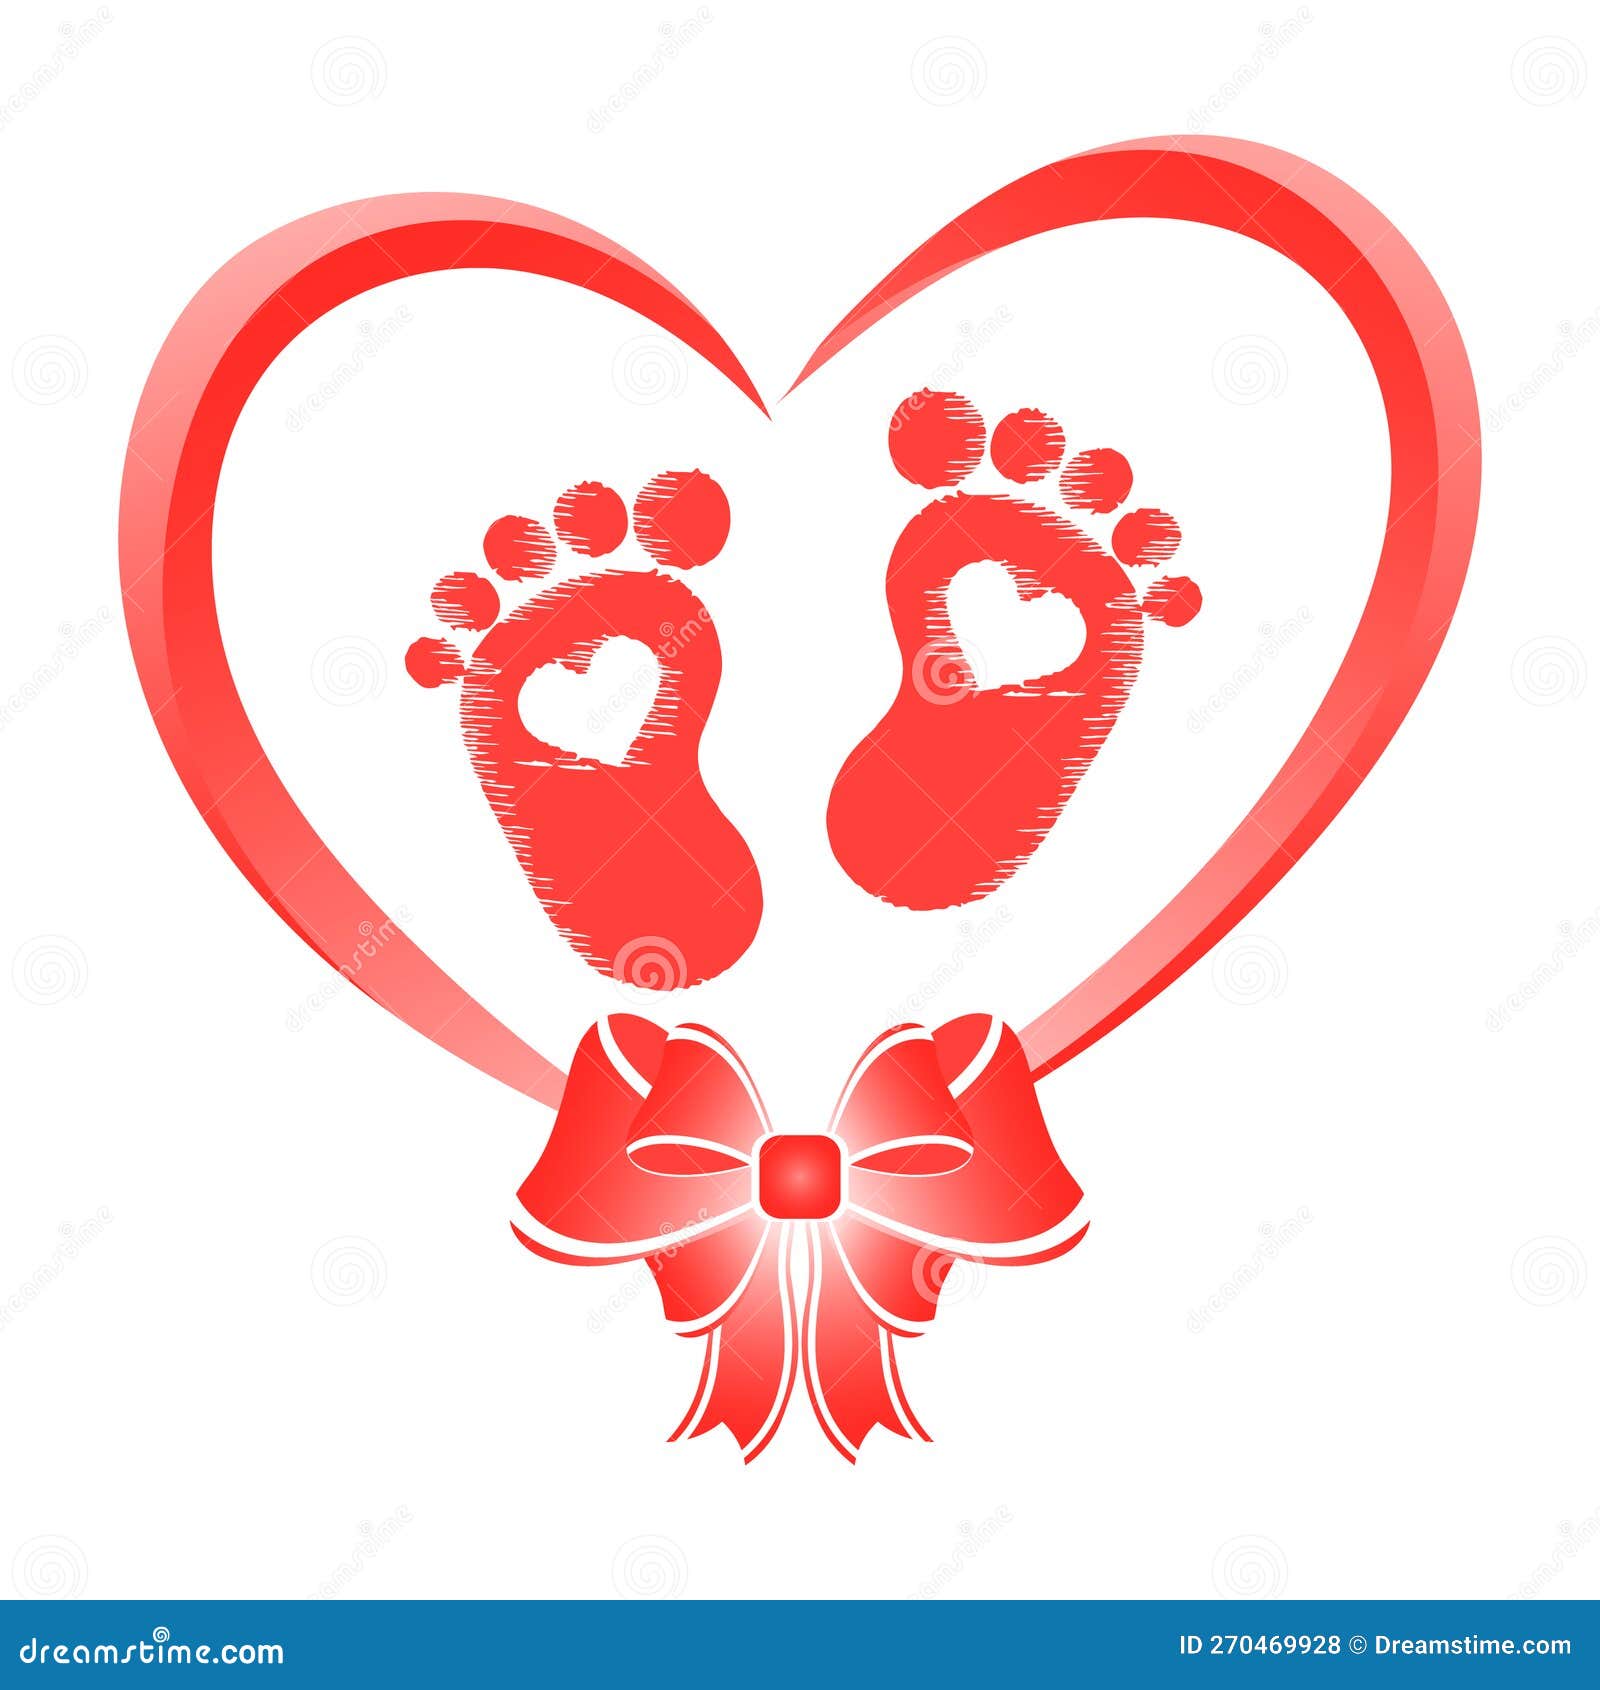 Dos huellas de bebé en forma de corazón. símbolo rojo y azul de un